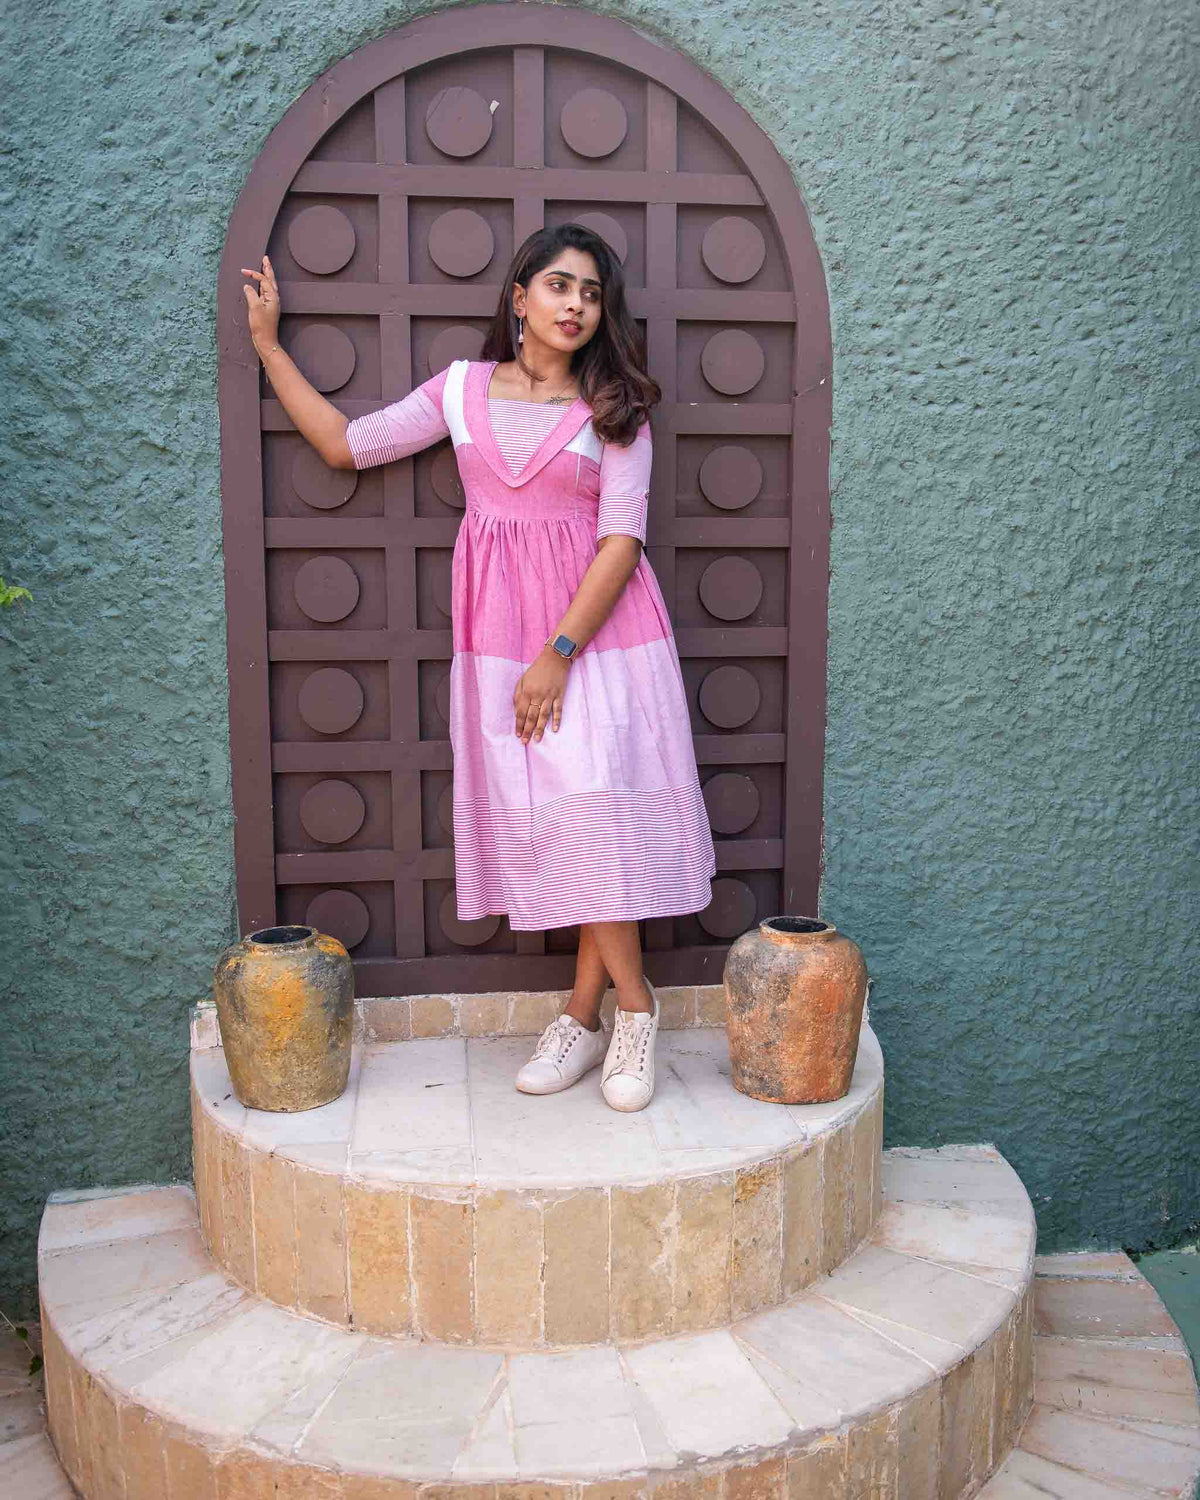 Candy Floss – A subtle pink dress